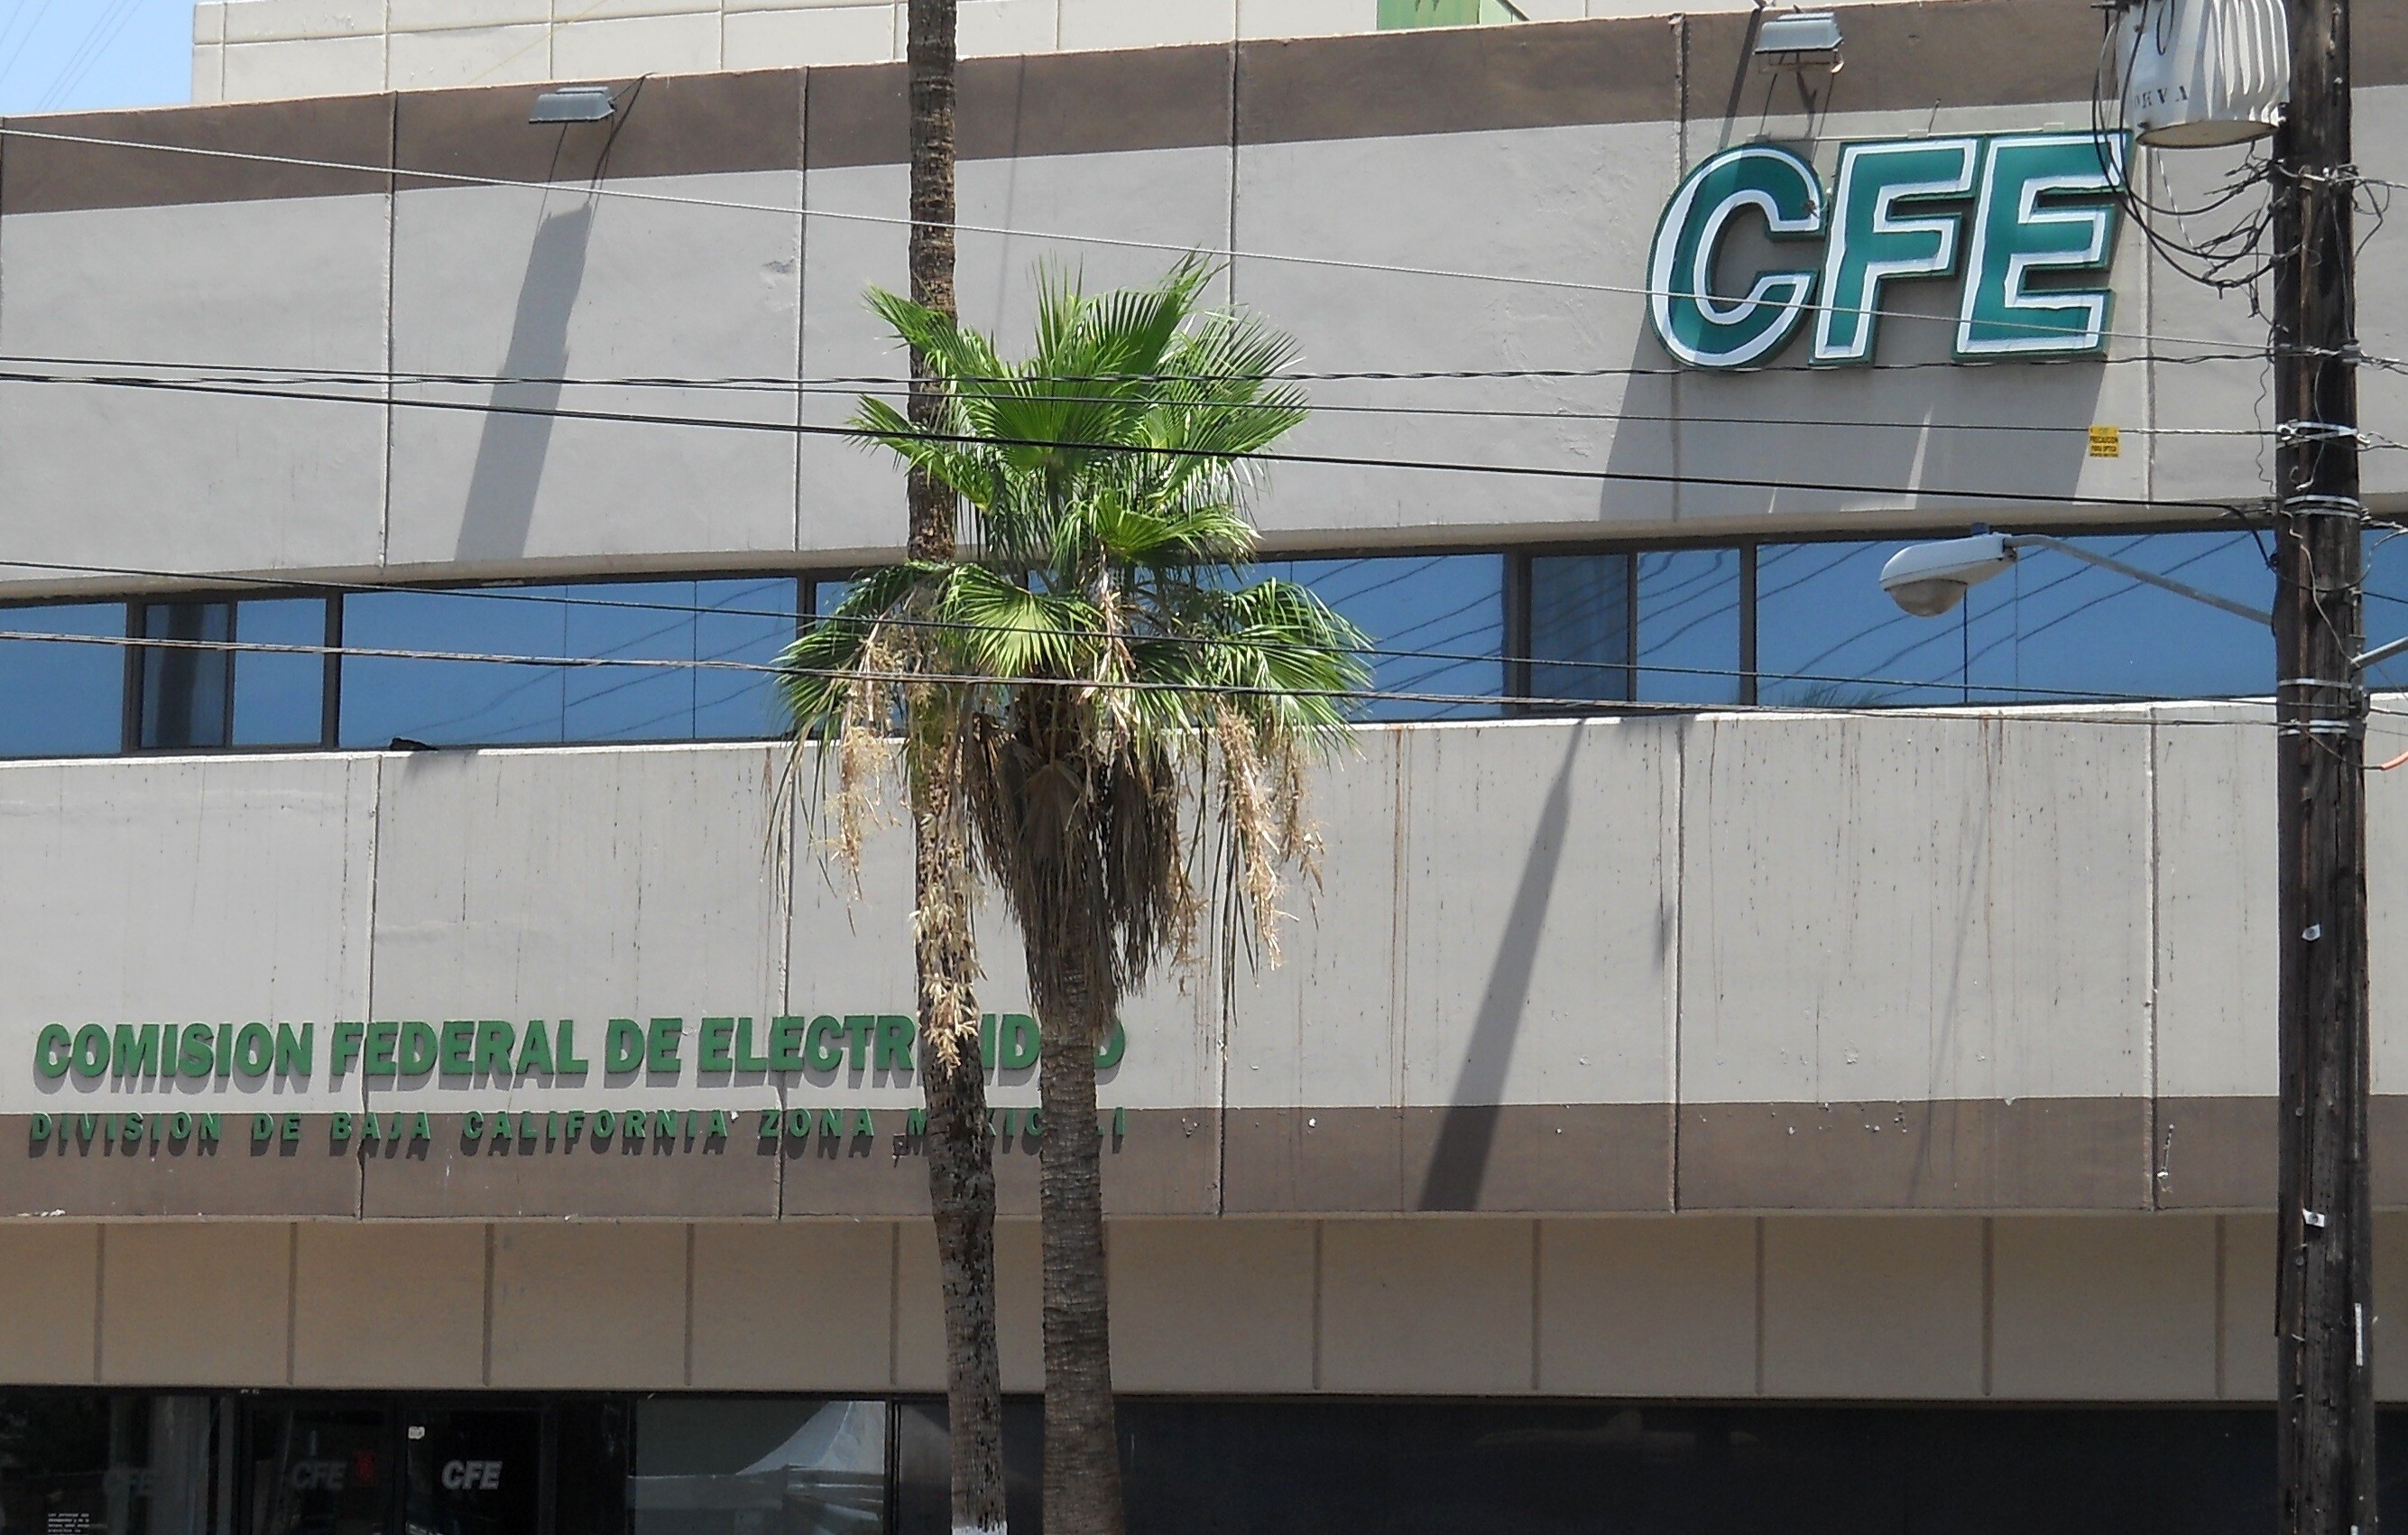 Sufre comercio daños por “apagones” llama Canaco a CFE a resolverlos